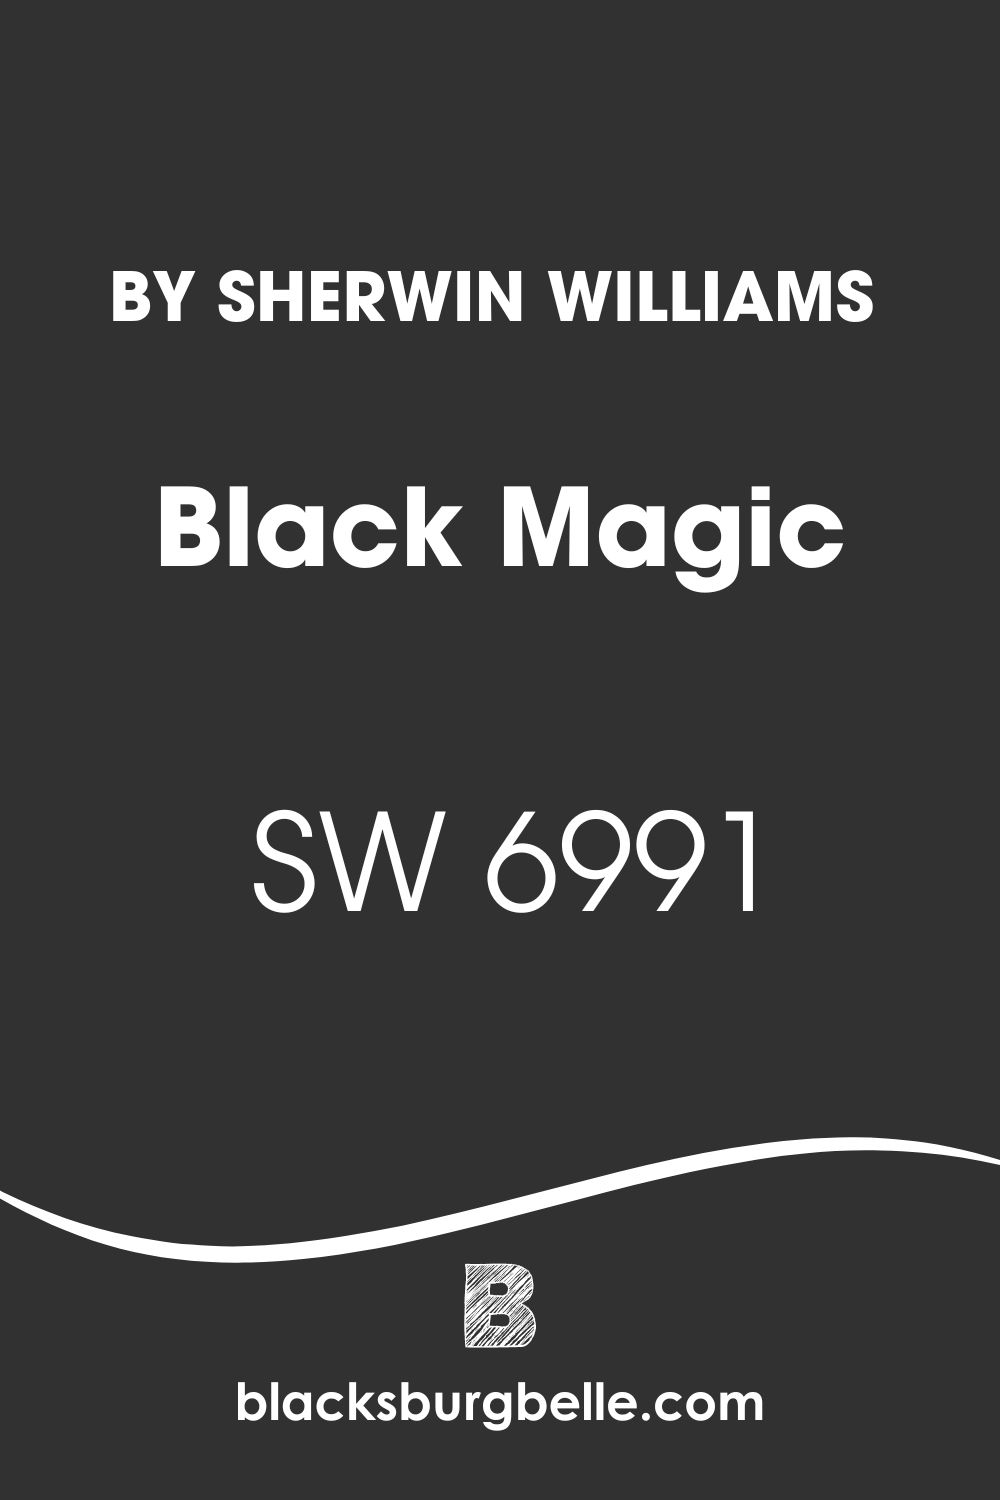 Sherwin Williams Black Magic SW 6991